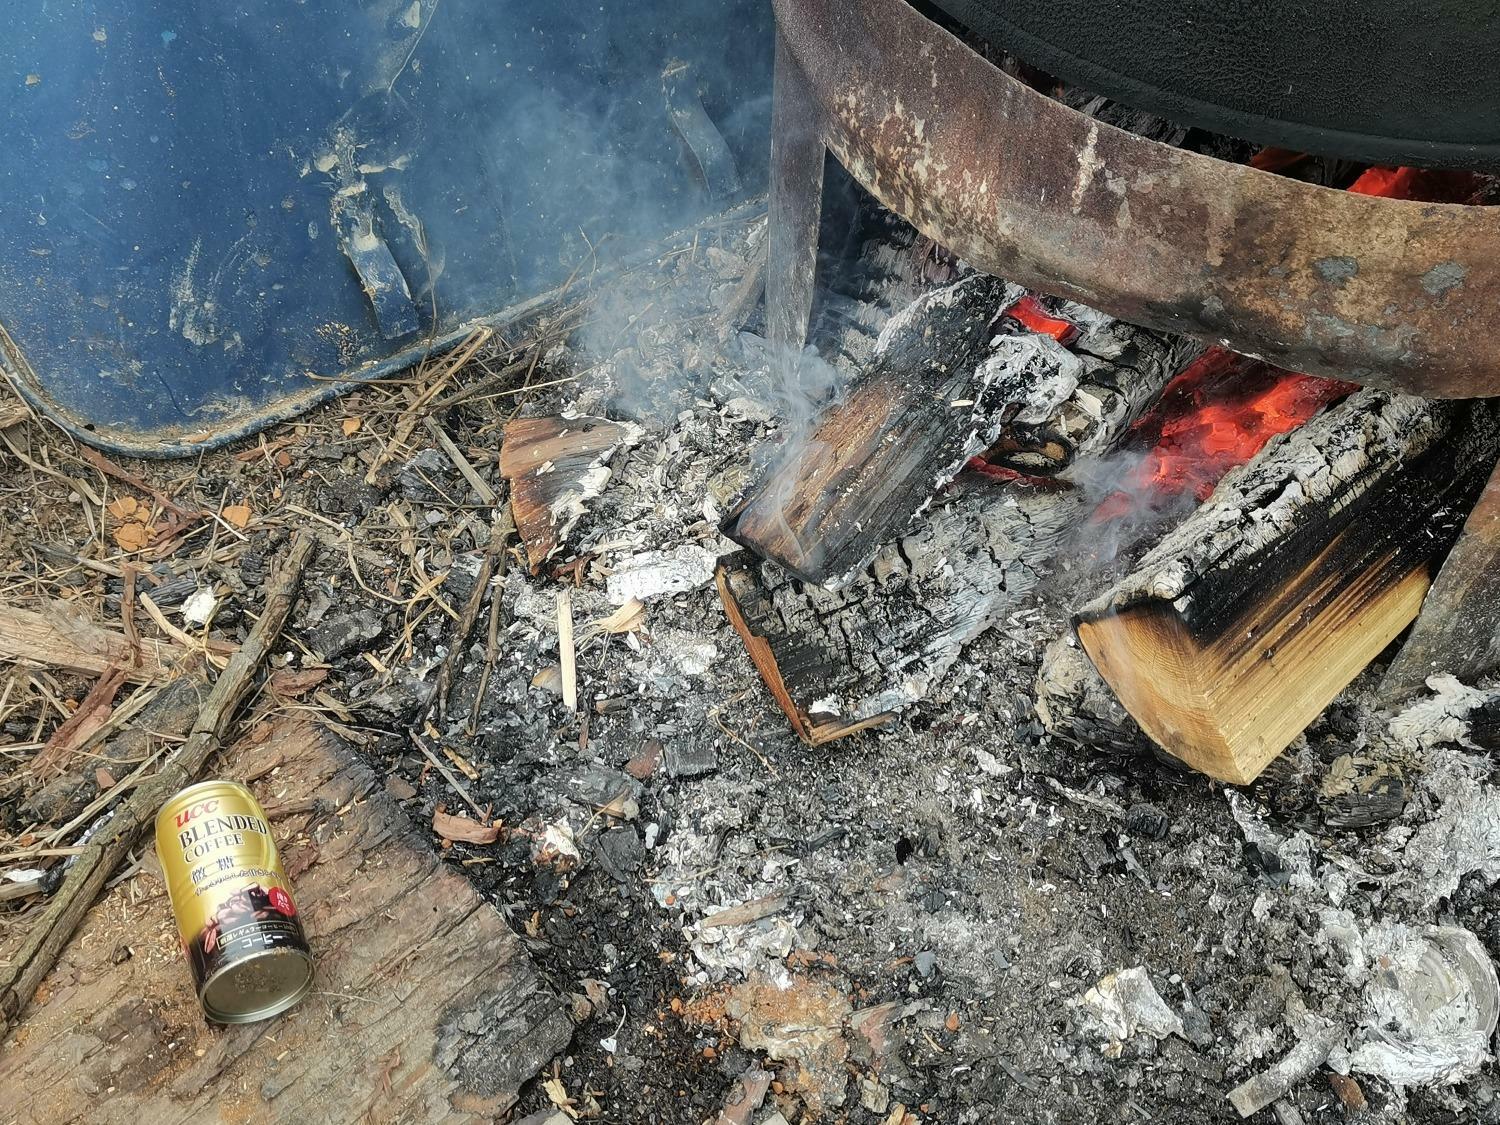 お湯を沸かす横で、薪の遠火でじんわり暖められたホカホカ缶コーヒー頂きました。同じ缶コーヒーでも自販機のホットとは違う、ぜいたくな感じ。これもまた貴重な体験でした